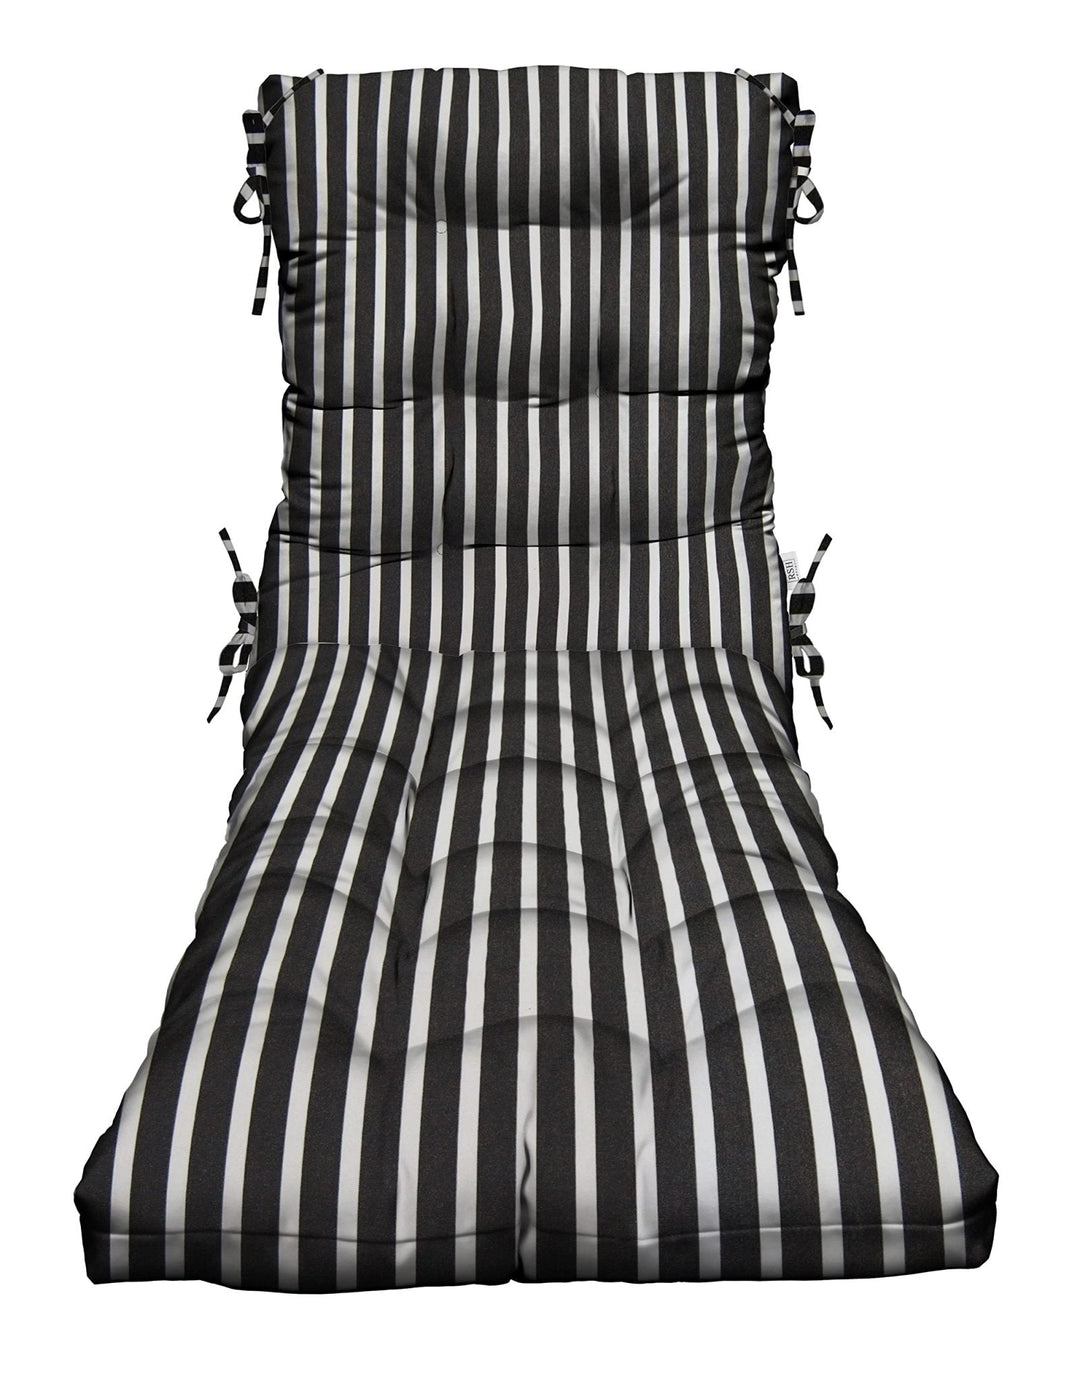 Chaise Lounge Chair Cushion | Tufted | 72" H x 22" W | Sunbrella Shore Classic - RSH Decor